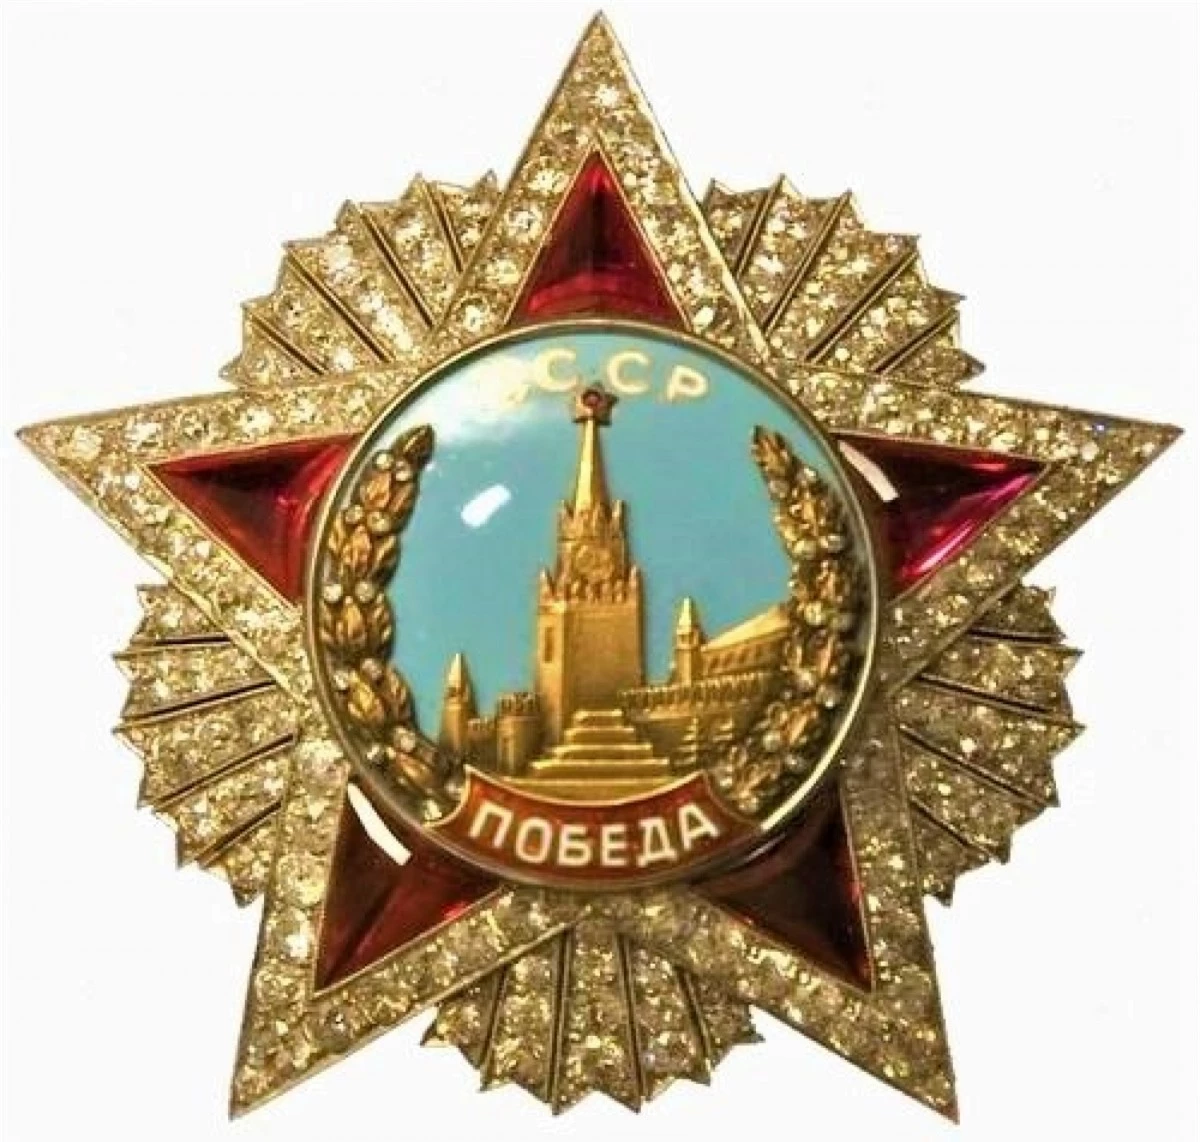 Huân chương Chiến thắng danh giá của Liên Xô. Nguồn: wikipedia.org